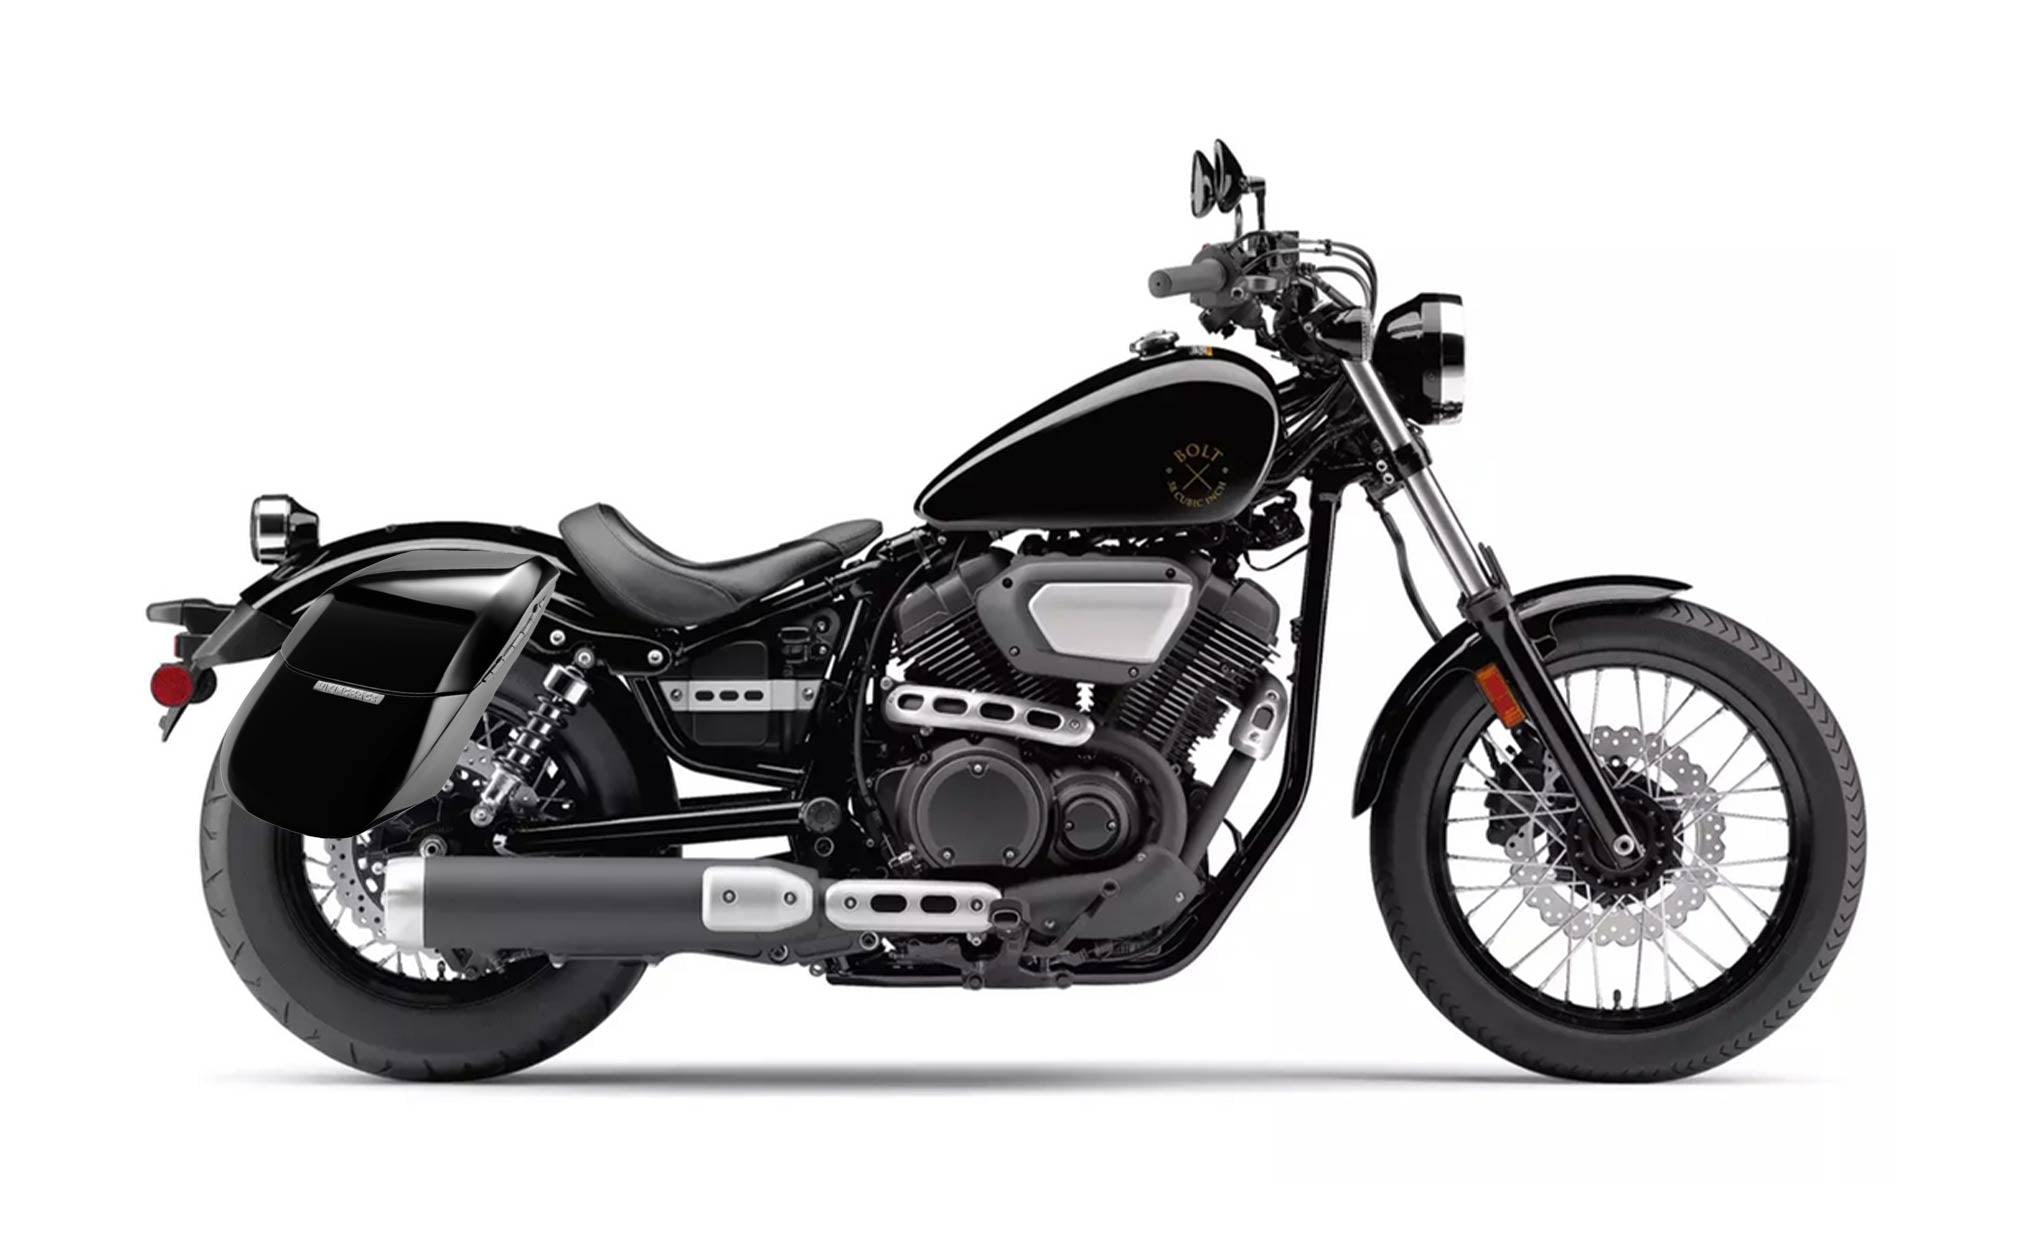 Viking Drifter Yamaha Bolt Specific Painted Motorcycle Hard Saddlebags on Bike Photo @expand